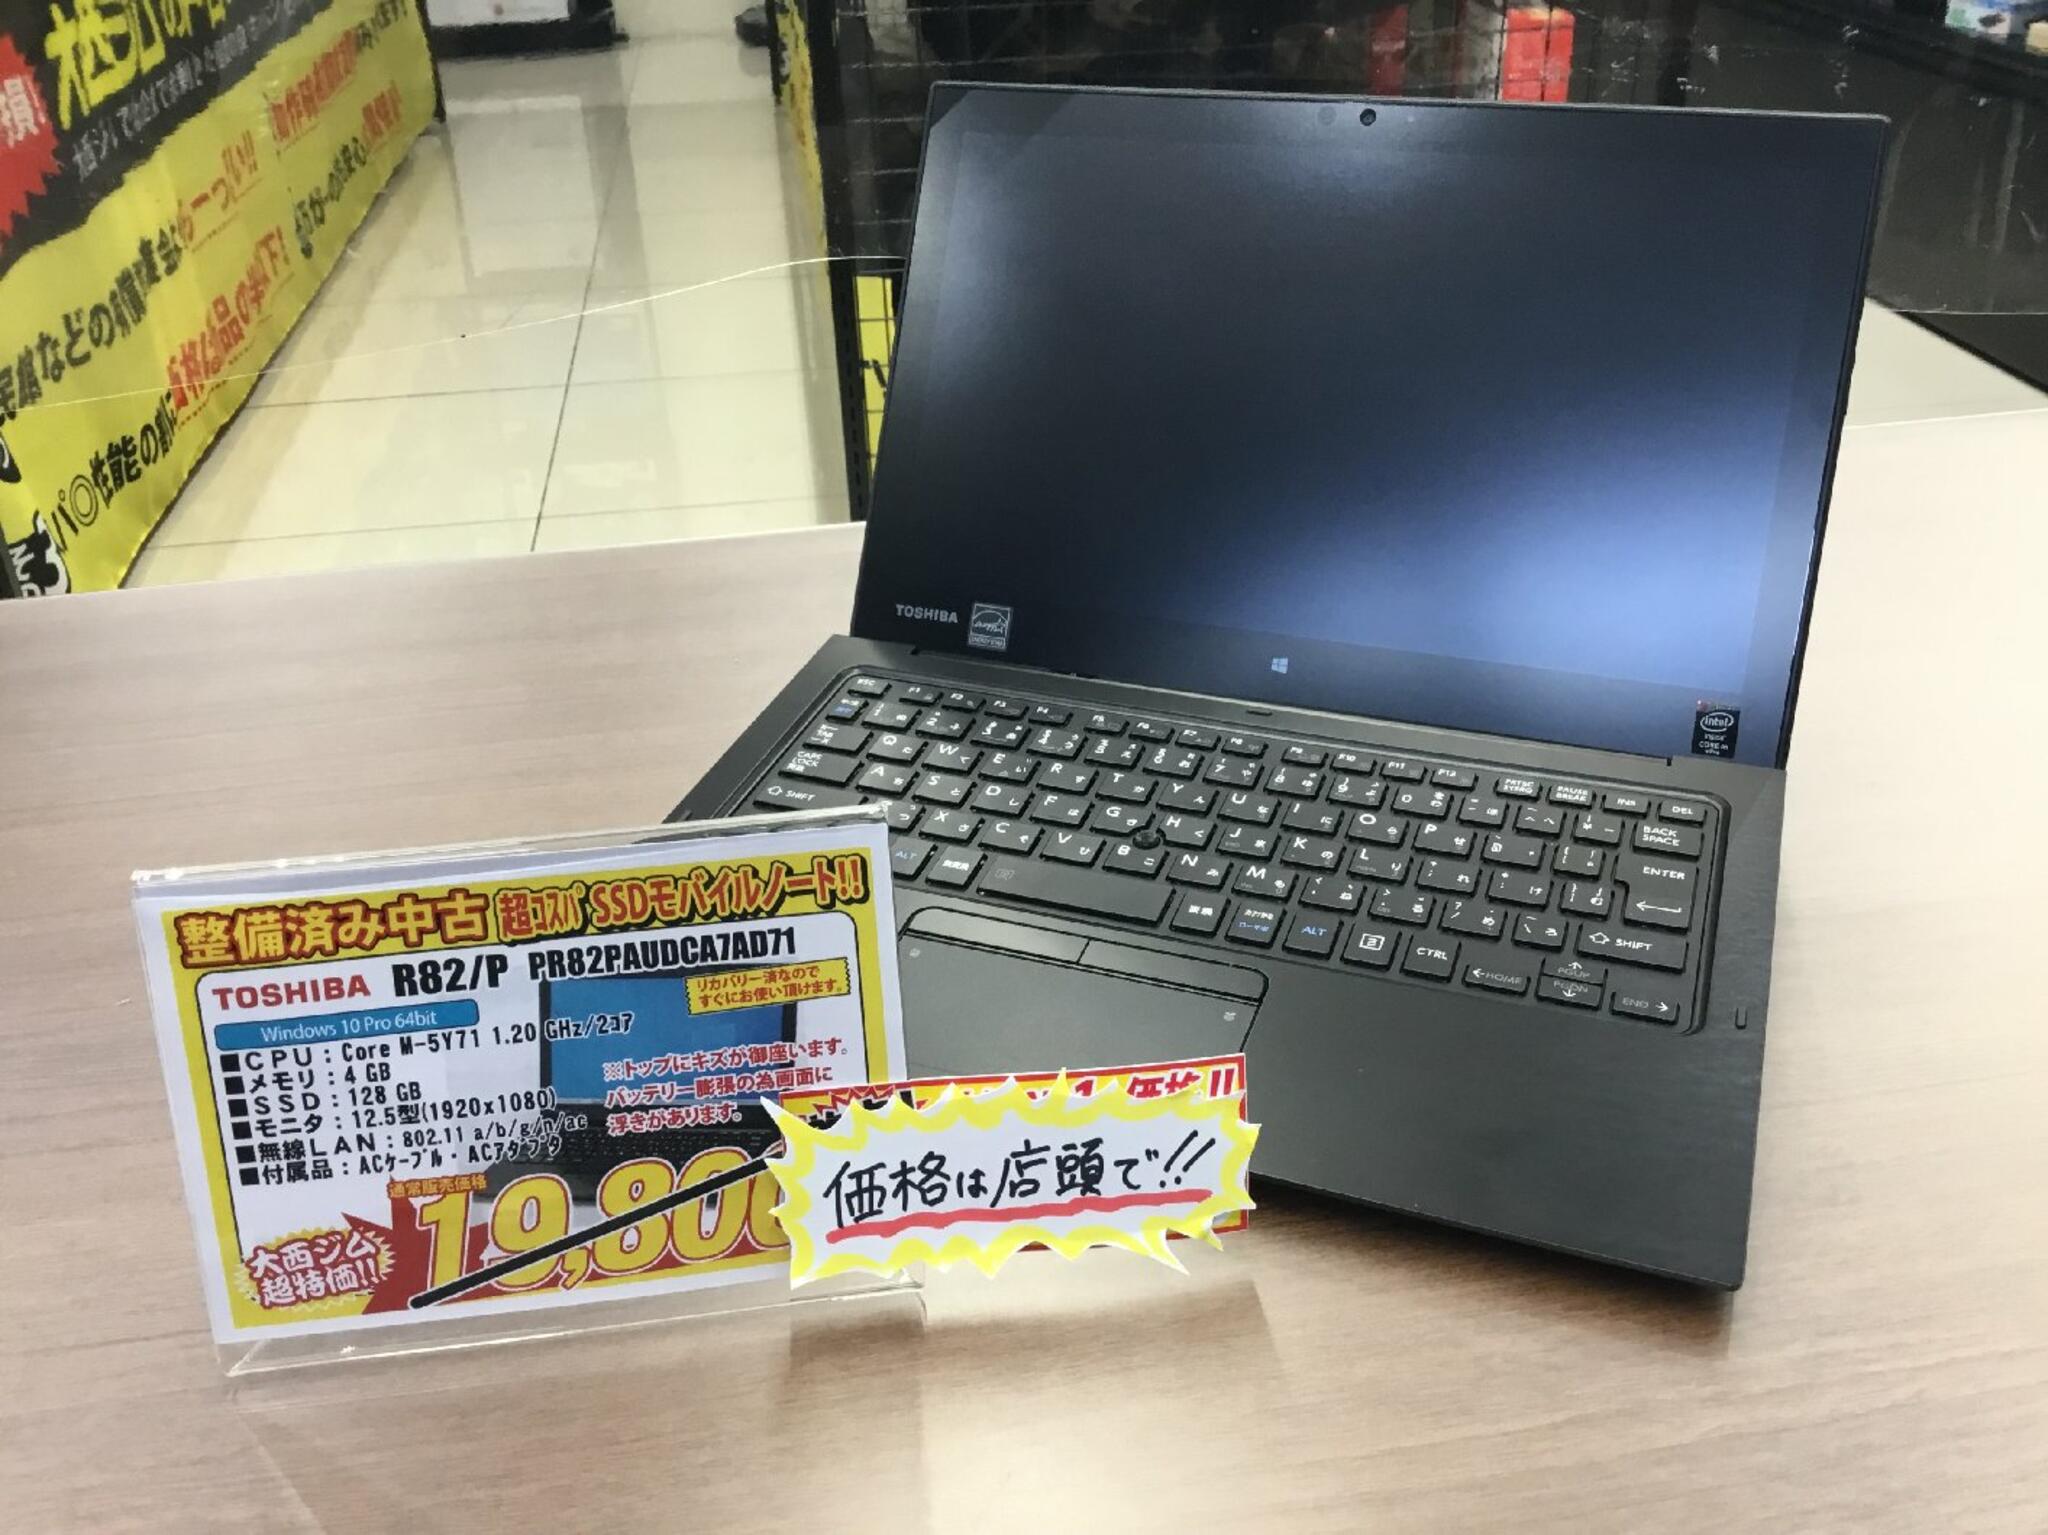 パソコン専門店 大西ジム 新長田店からのお知らせ(お買い得中古タブレットノートPC入荷しました！)に関する写真